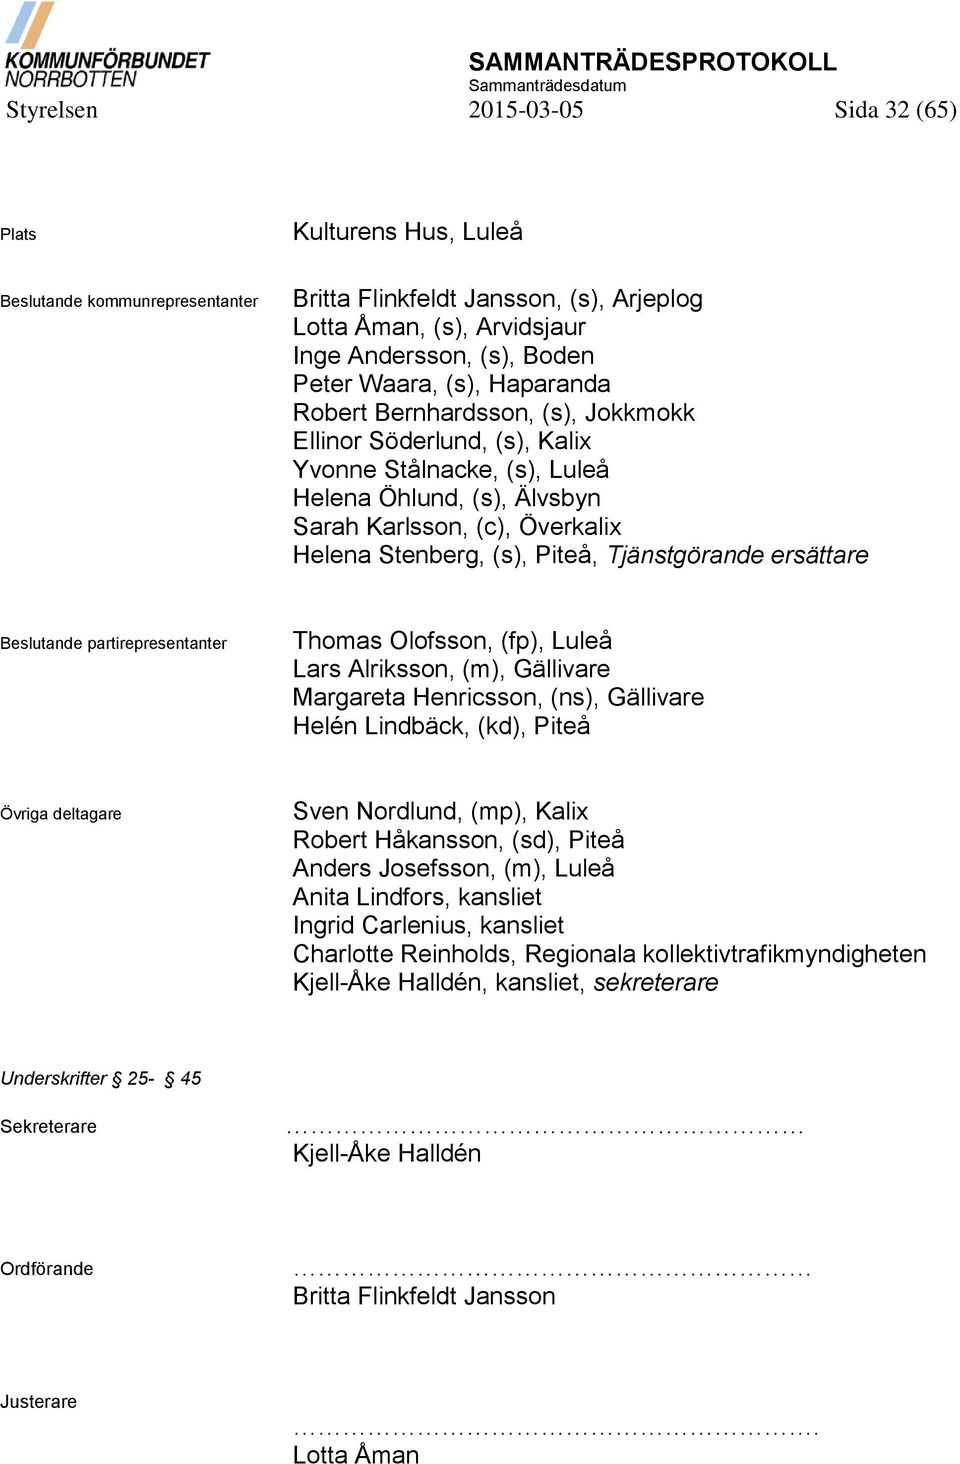 Piteå, Tjänstgörande ersättare Beslutande partirepresentanter Thomas Olofsson, (fp), Luleå Lars Alriksson, (m), Gällivare Margareta Henricsson, (ns), Gällivare Helén Lindbäck, (kd), Piteå Övriga